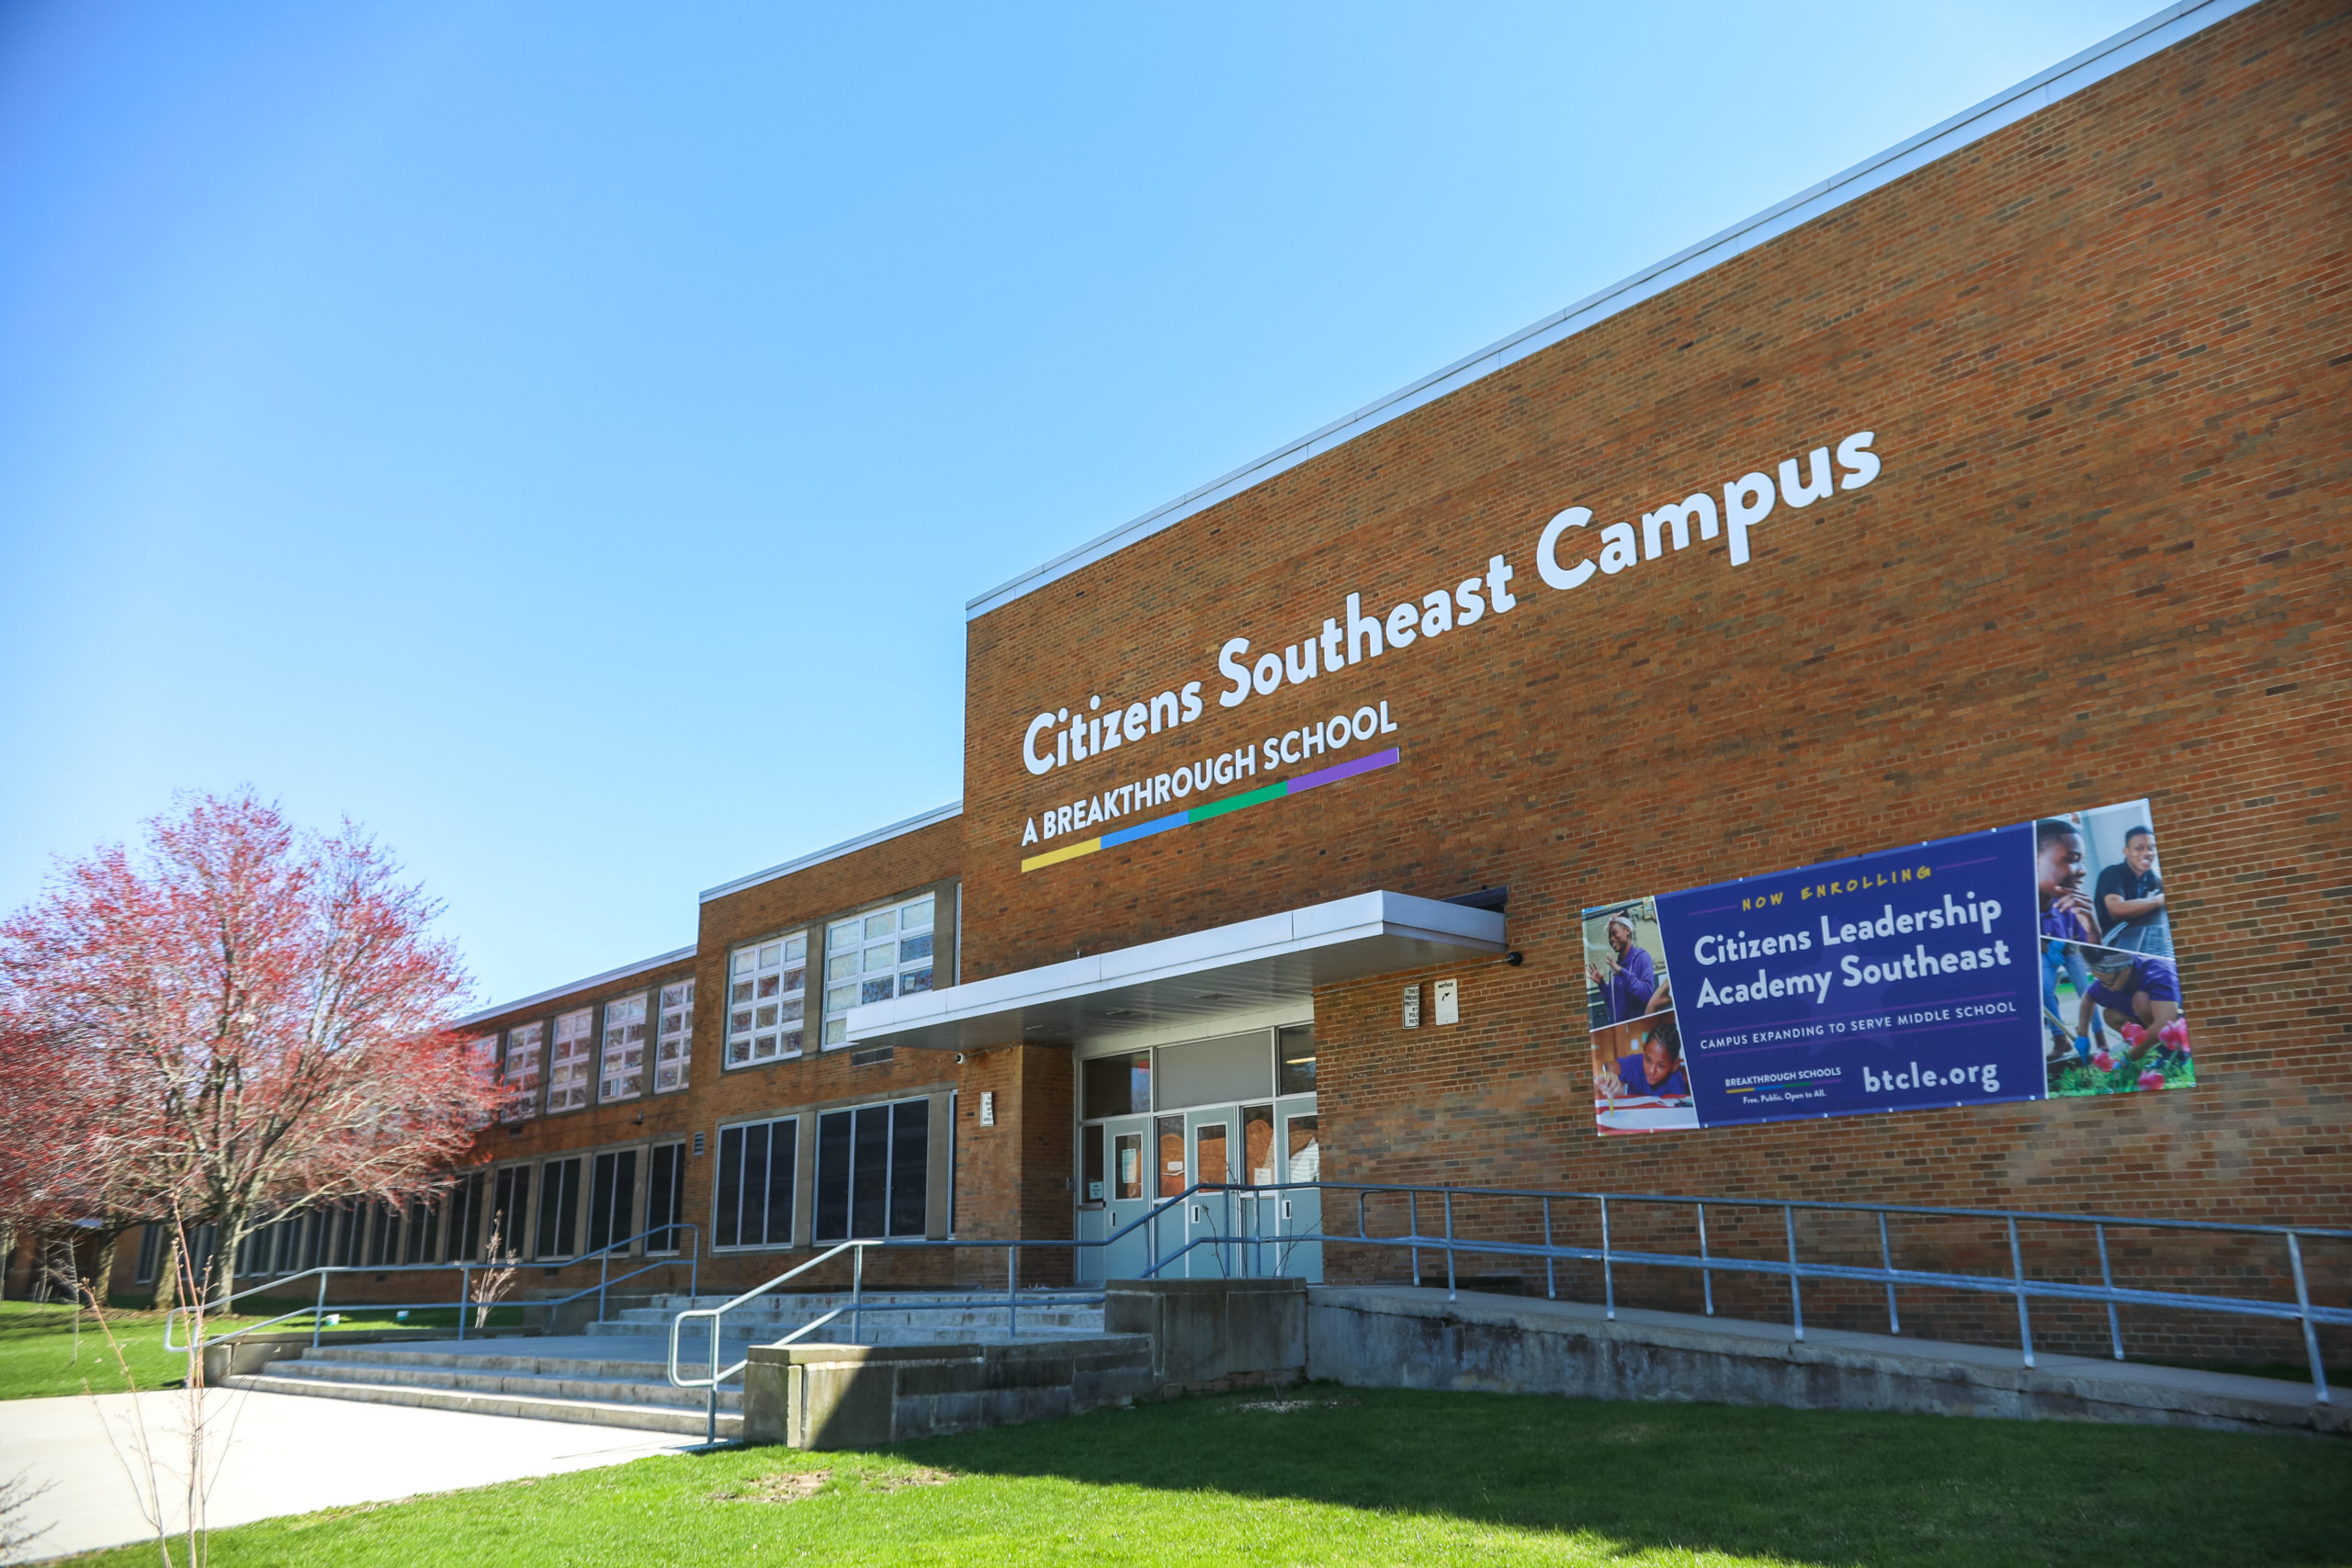 Citizens Academy Southeast Breakthrough Public Schools (BPS)